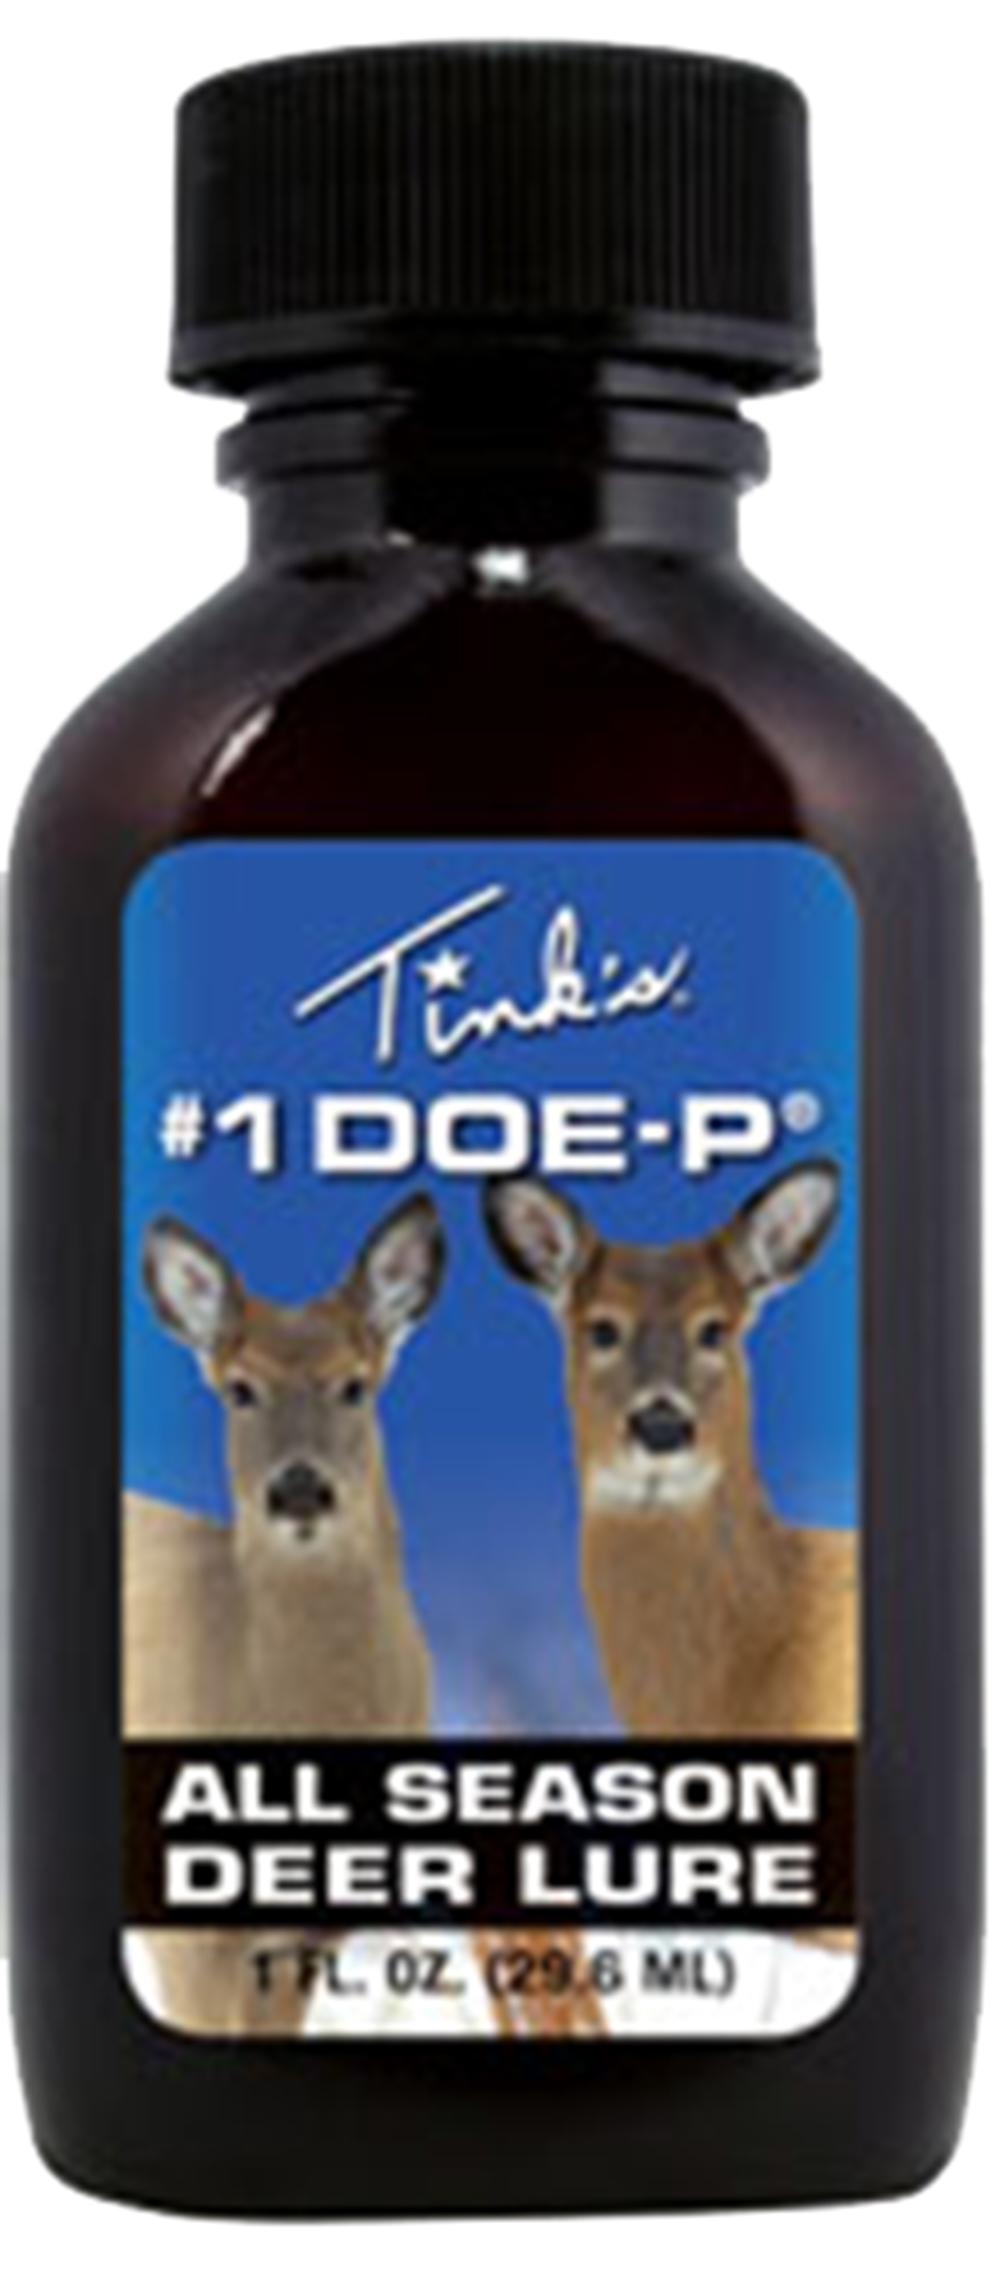 Tinks W6249 #1 Doe-P Deer Scent 1oz